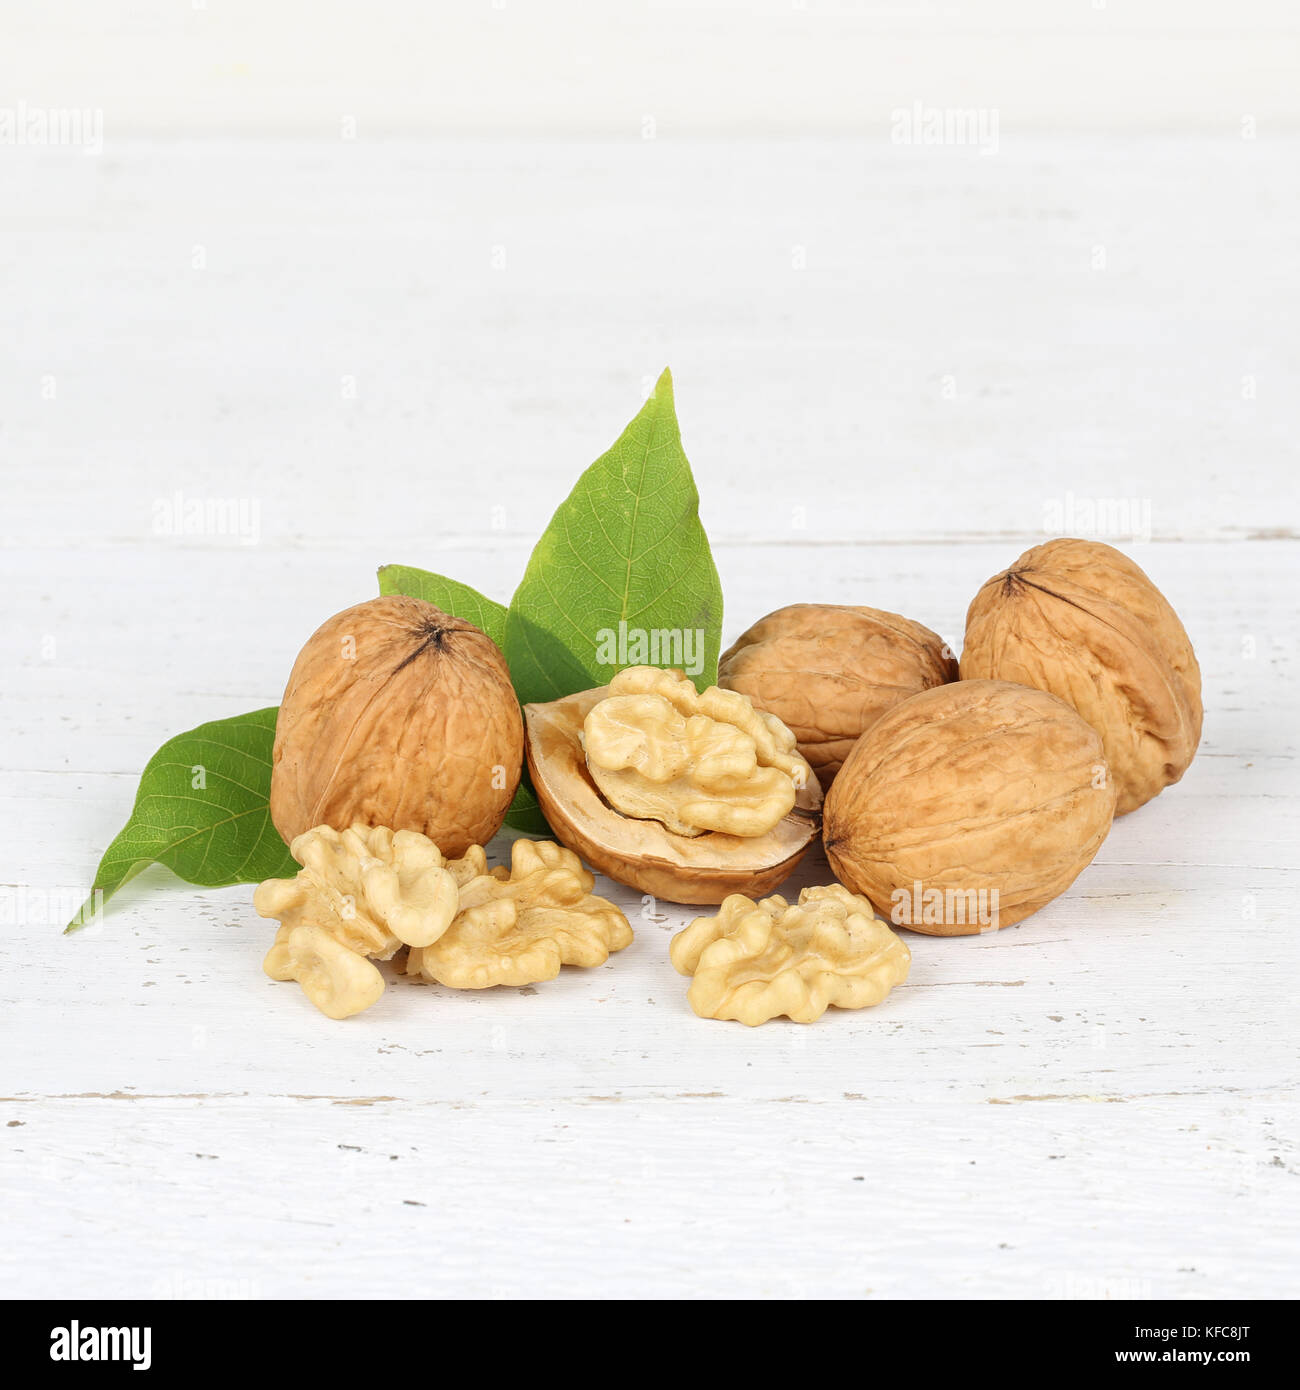 Walnuts walnut nuts square on wooden board food Stock Photo